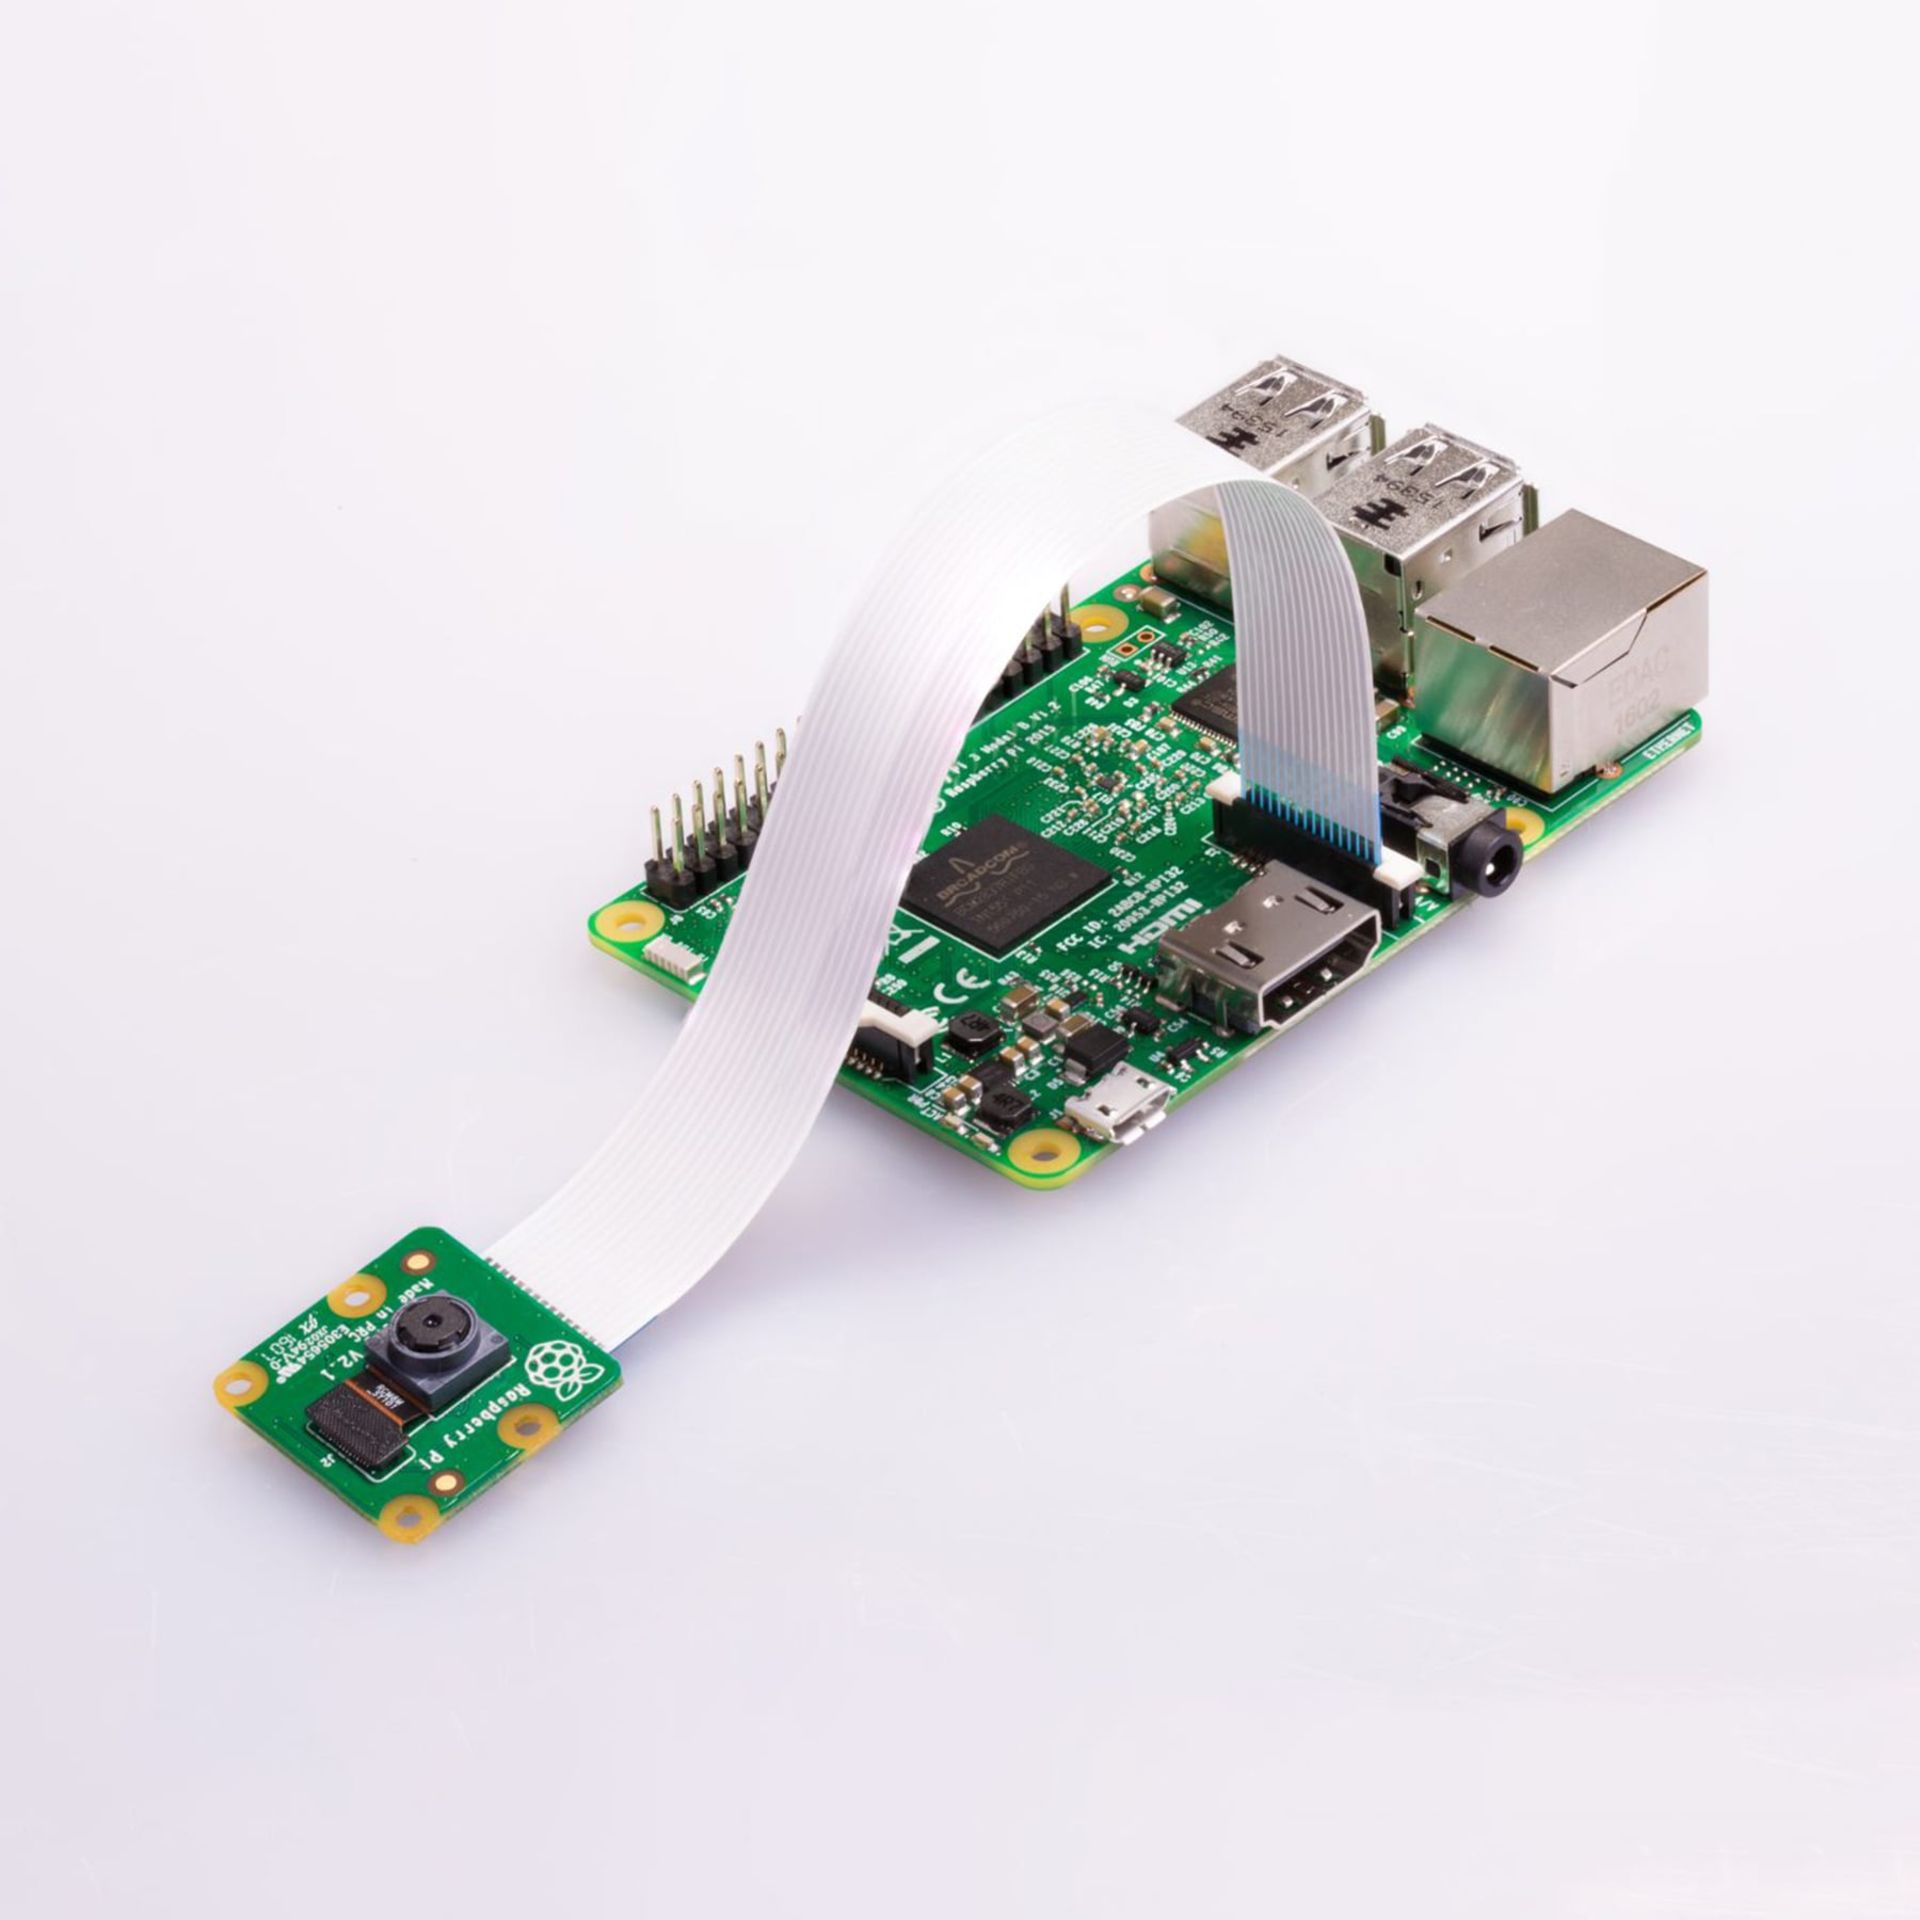 مرجع متخصصين ايران ماژول دوربين Raspberry Pi Camera Module 2